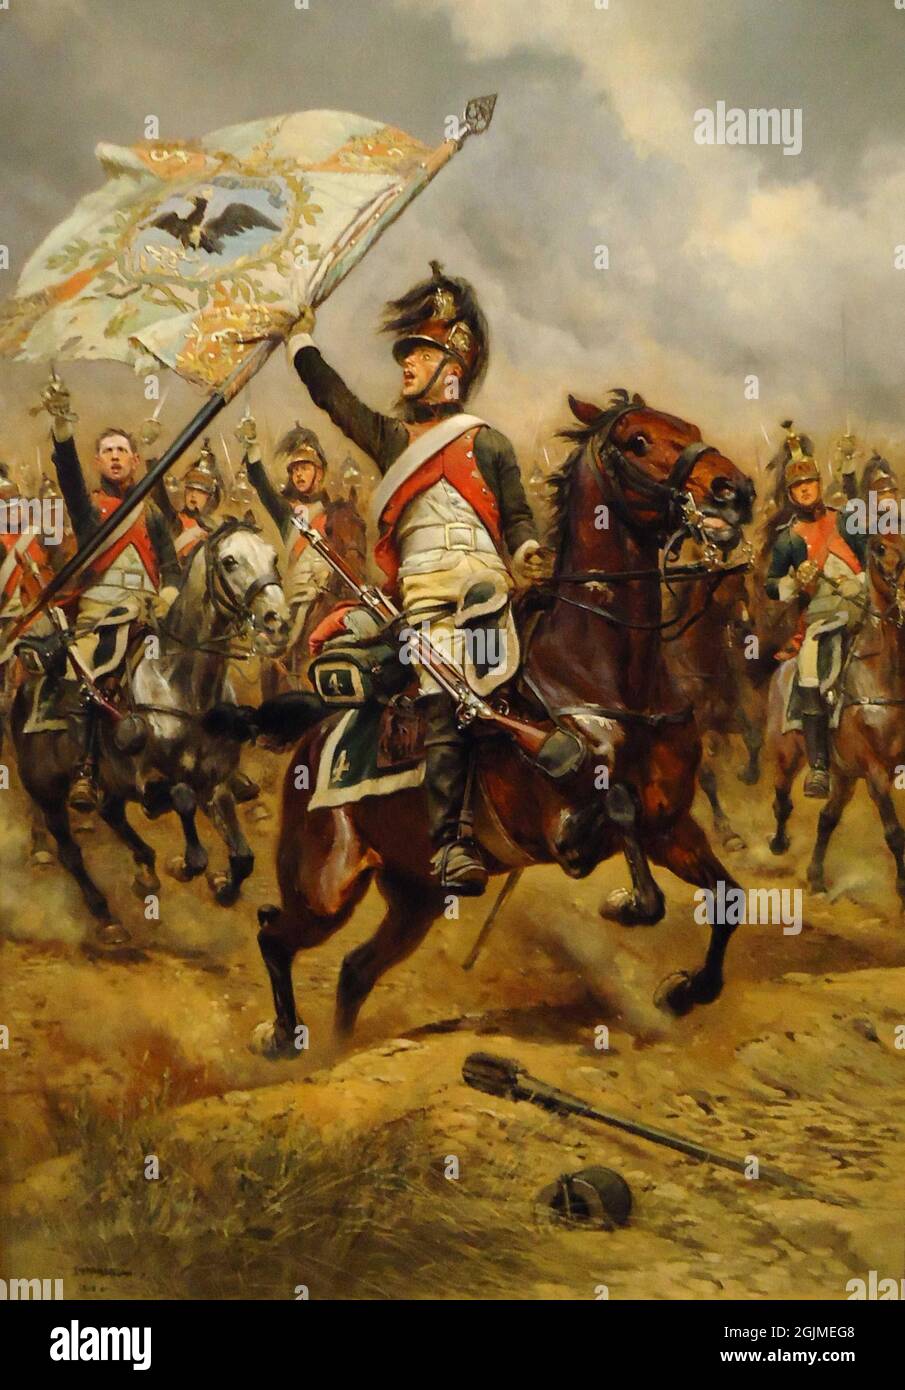 Französischer Dragoon mit erfasster preußischer Flagge bei der Schlacht von Jena–Auerstedt 1806, in der die preußische Armee solide besiegt wurde. Gemälde von Édouar Détaille. Stockfoto